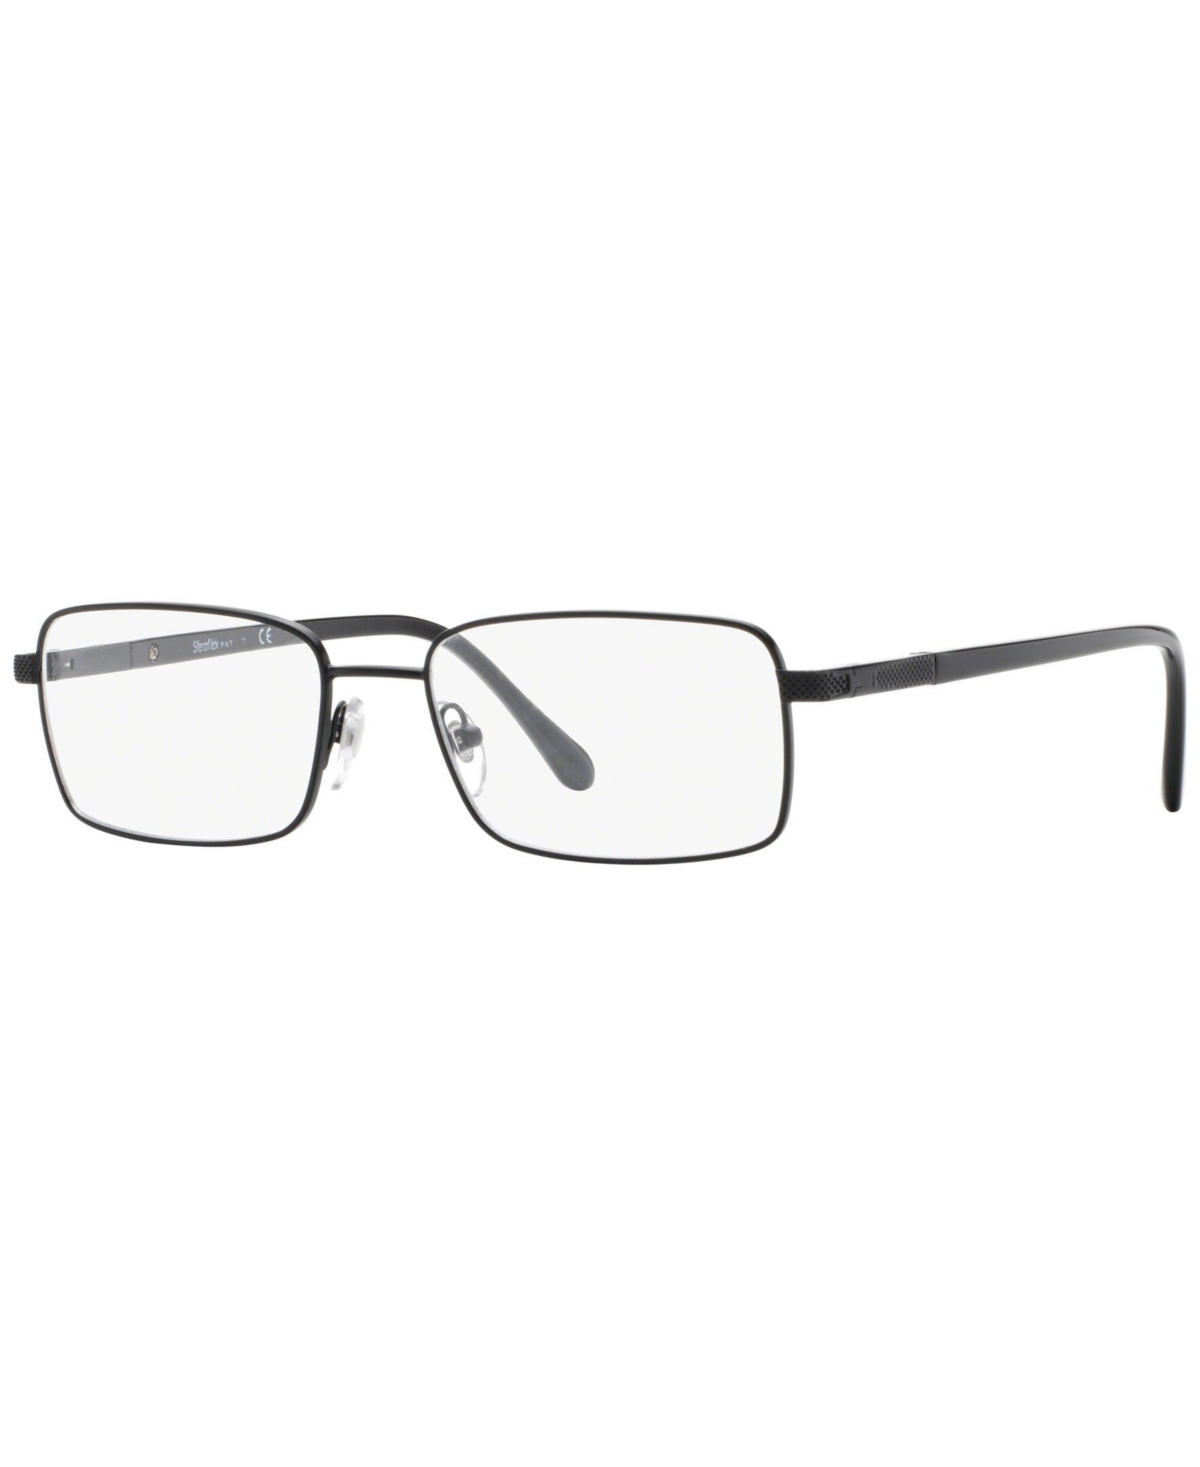 Steroflex Men's Eyeglasses, SF2265 - Matte Black